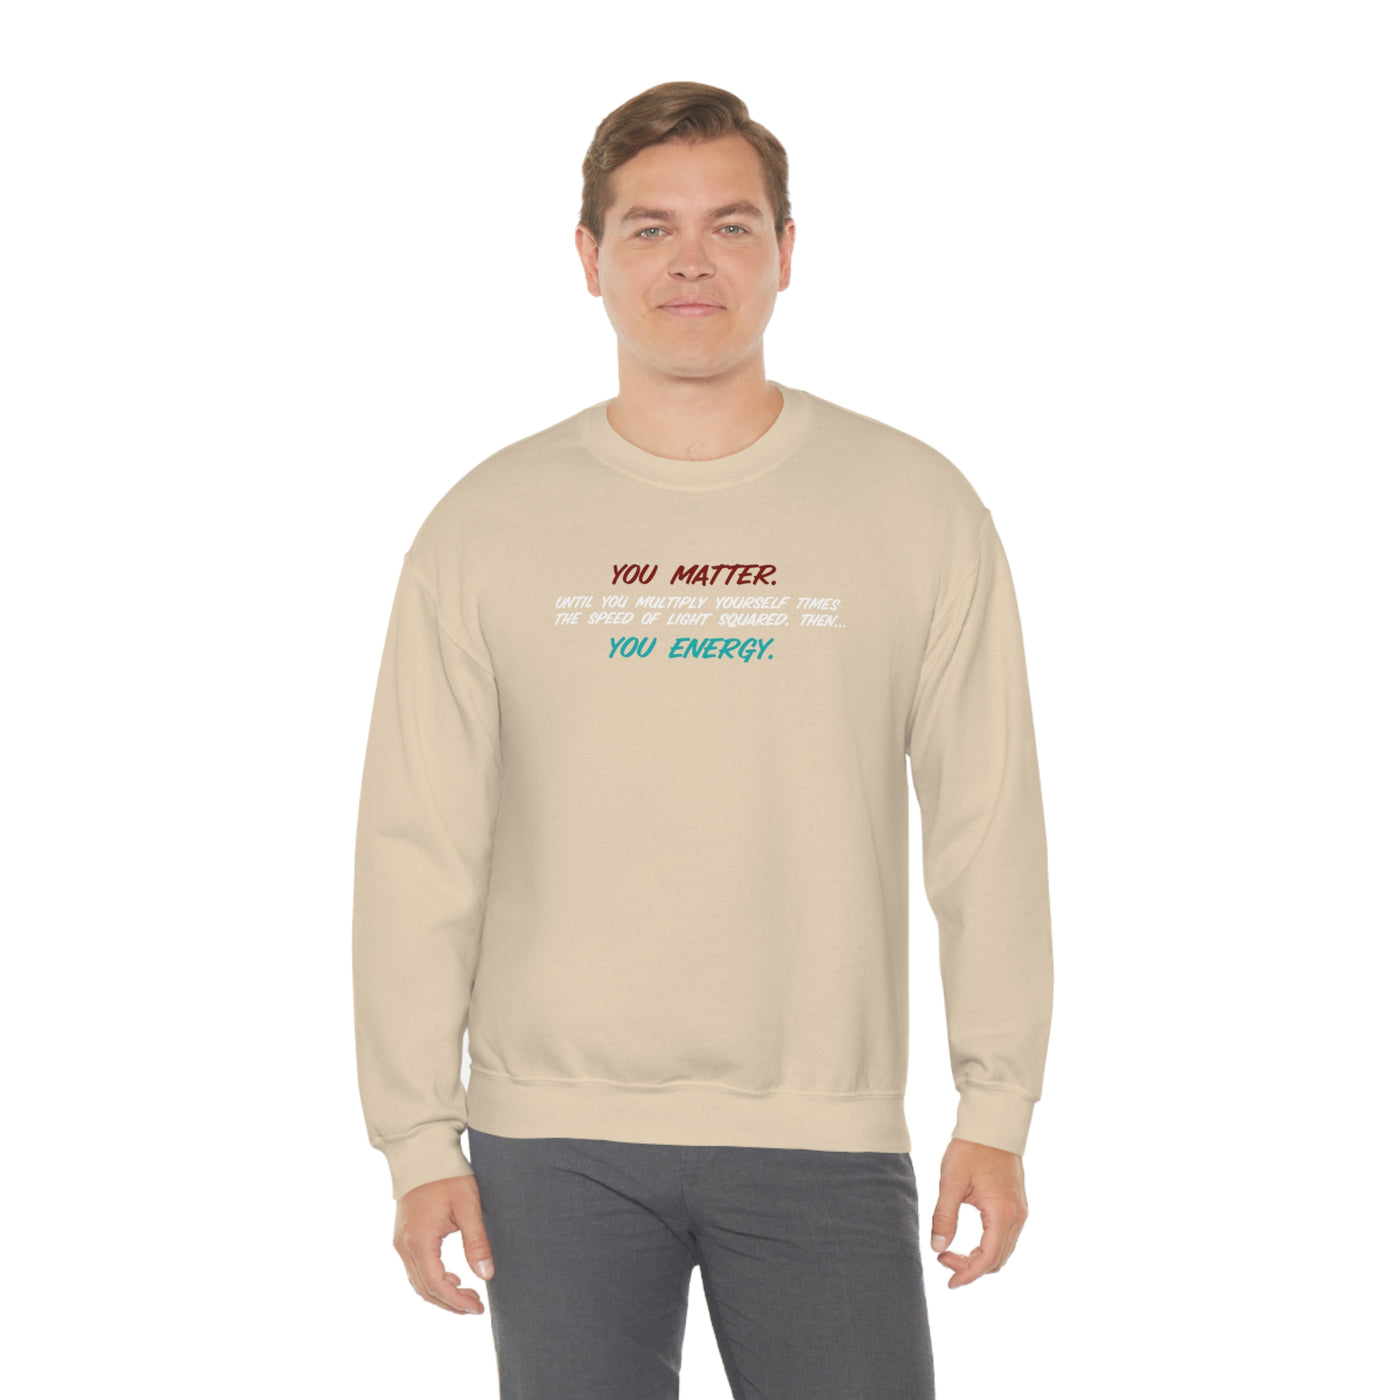 You Matter Crewneck Sweatshirt